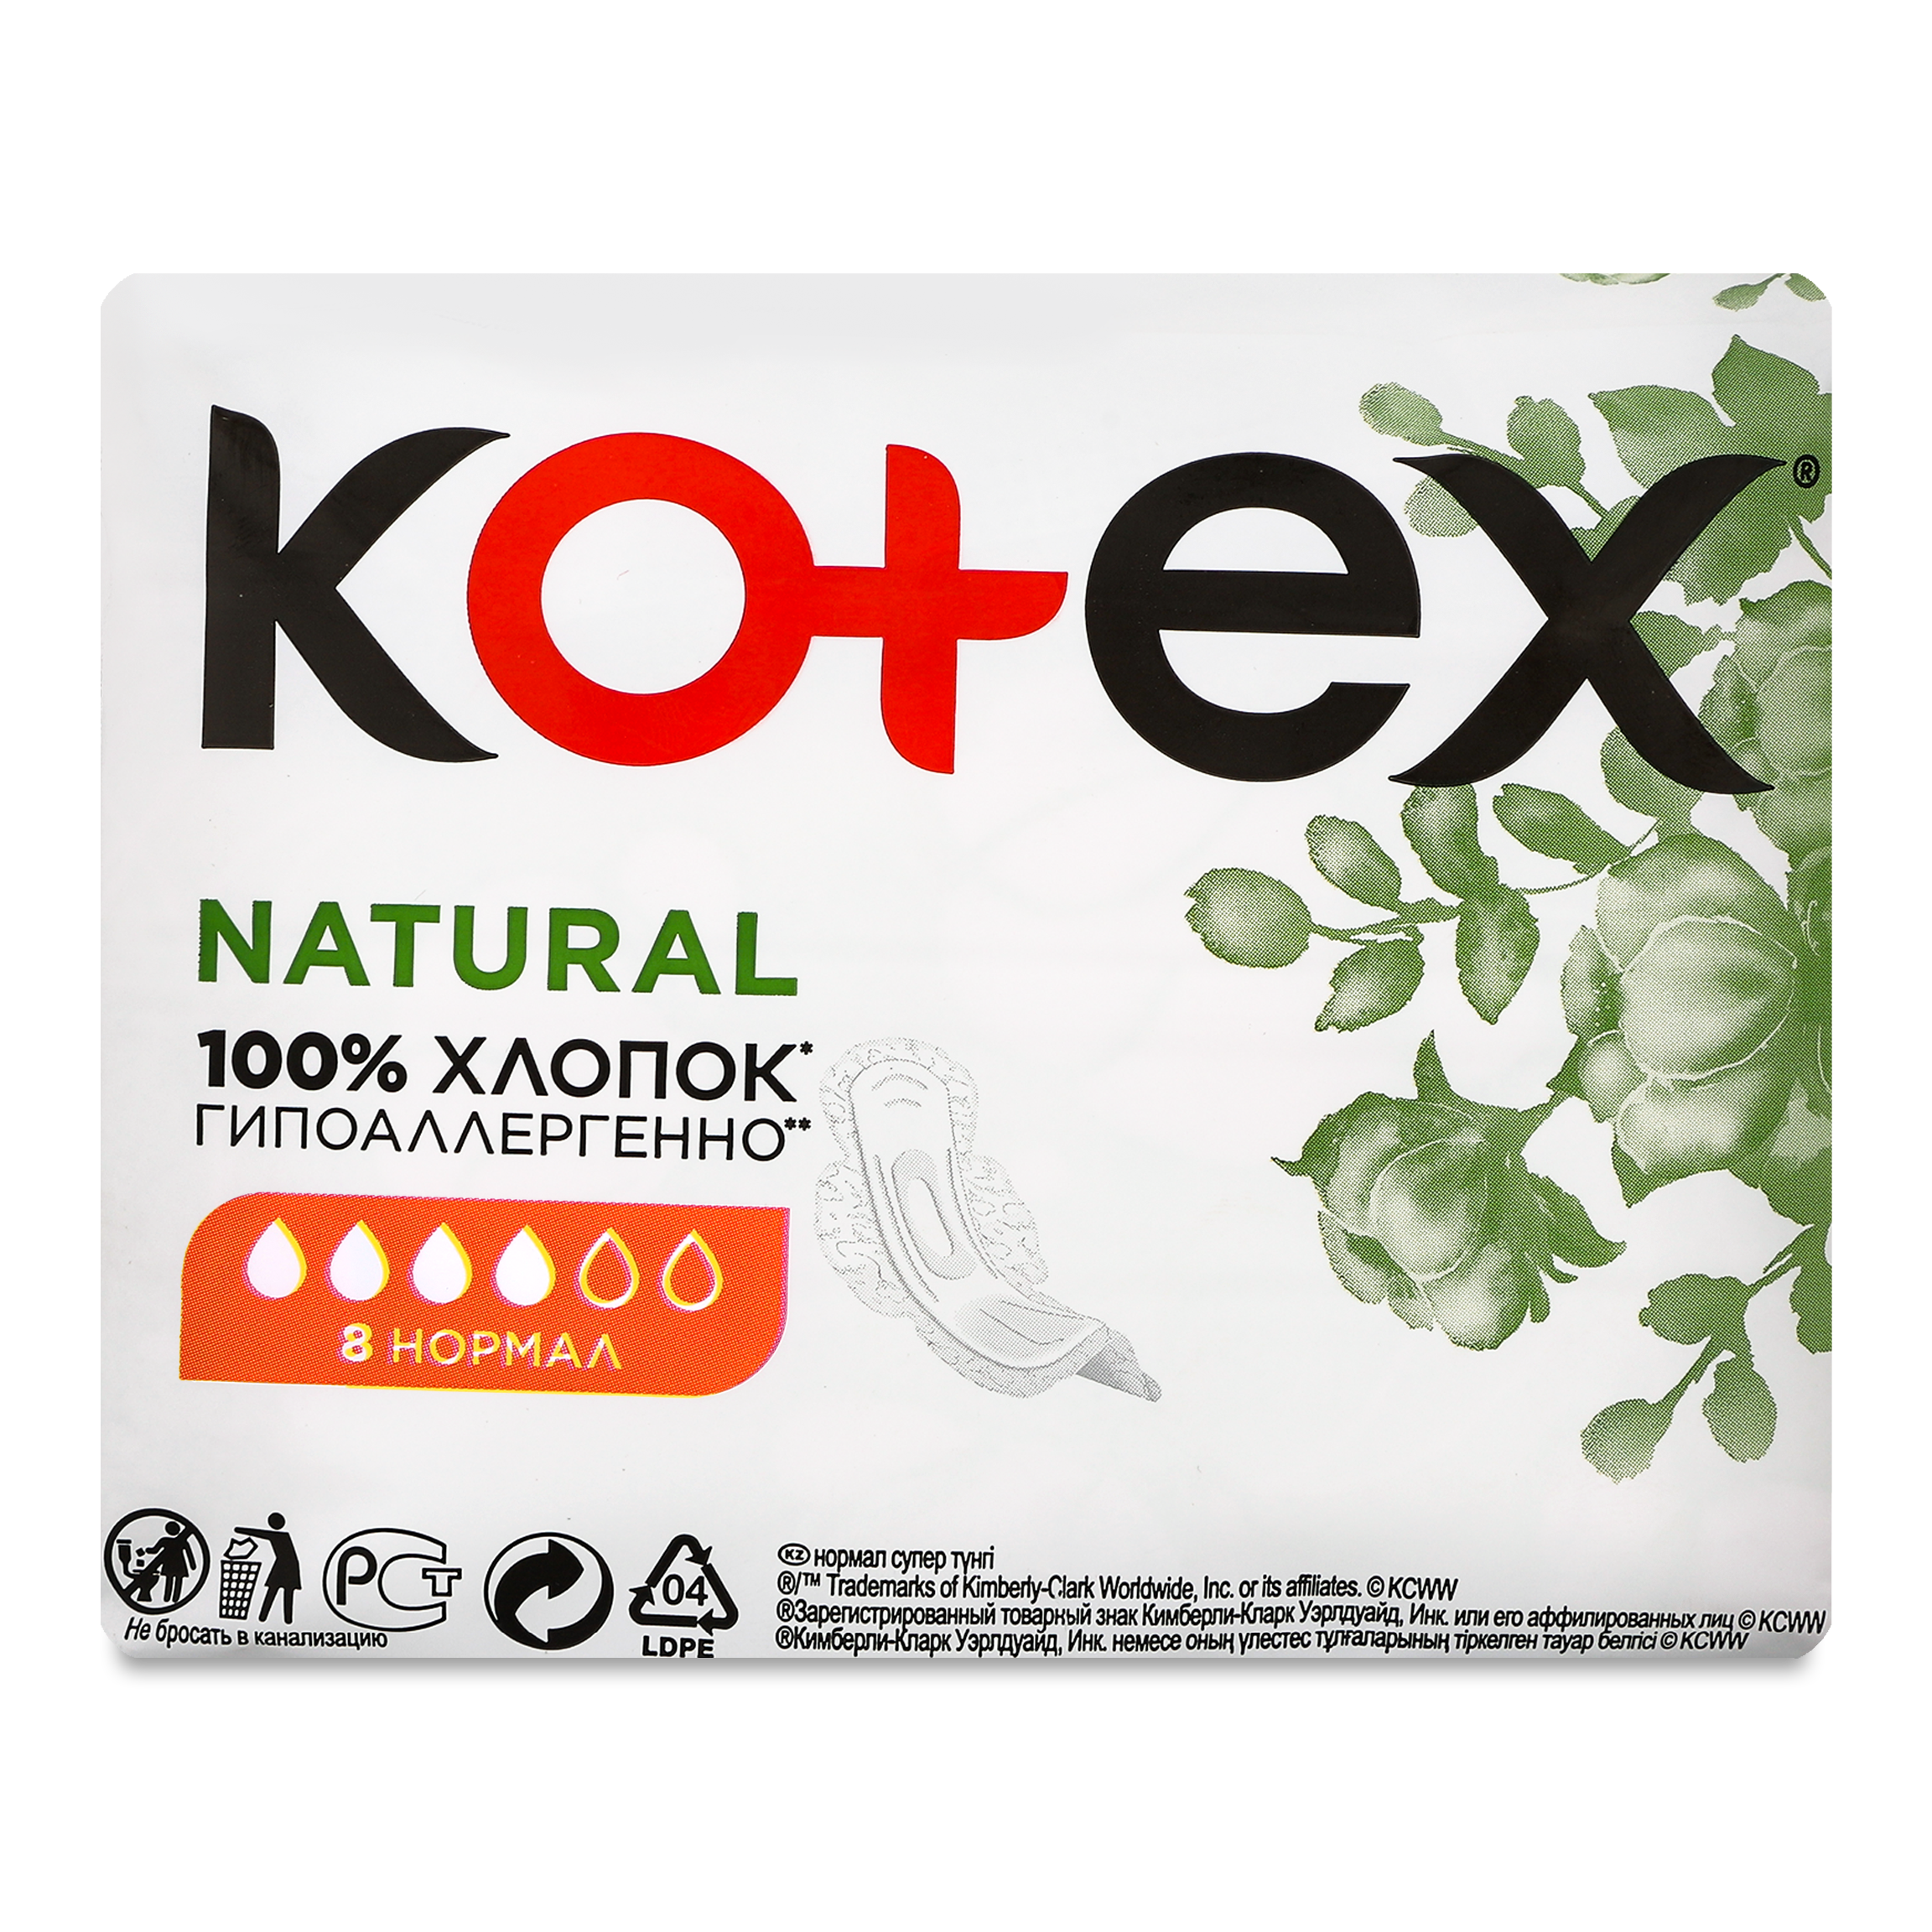 Прокладки Kotex Natural 4 краплі 8шт